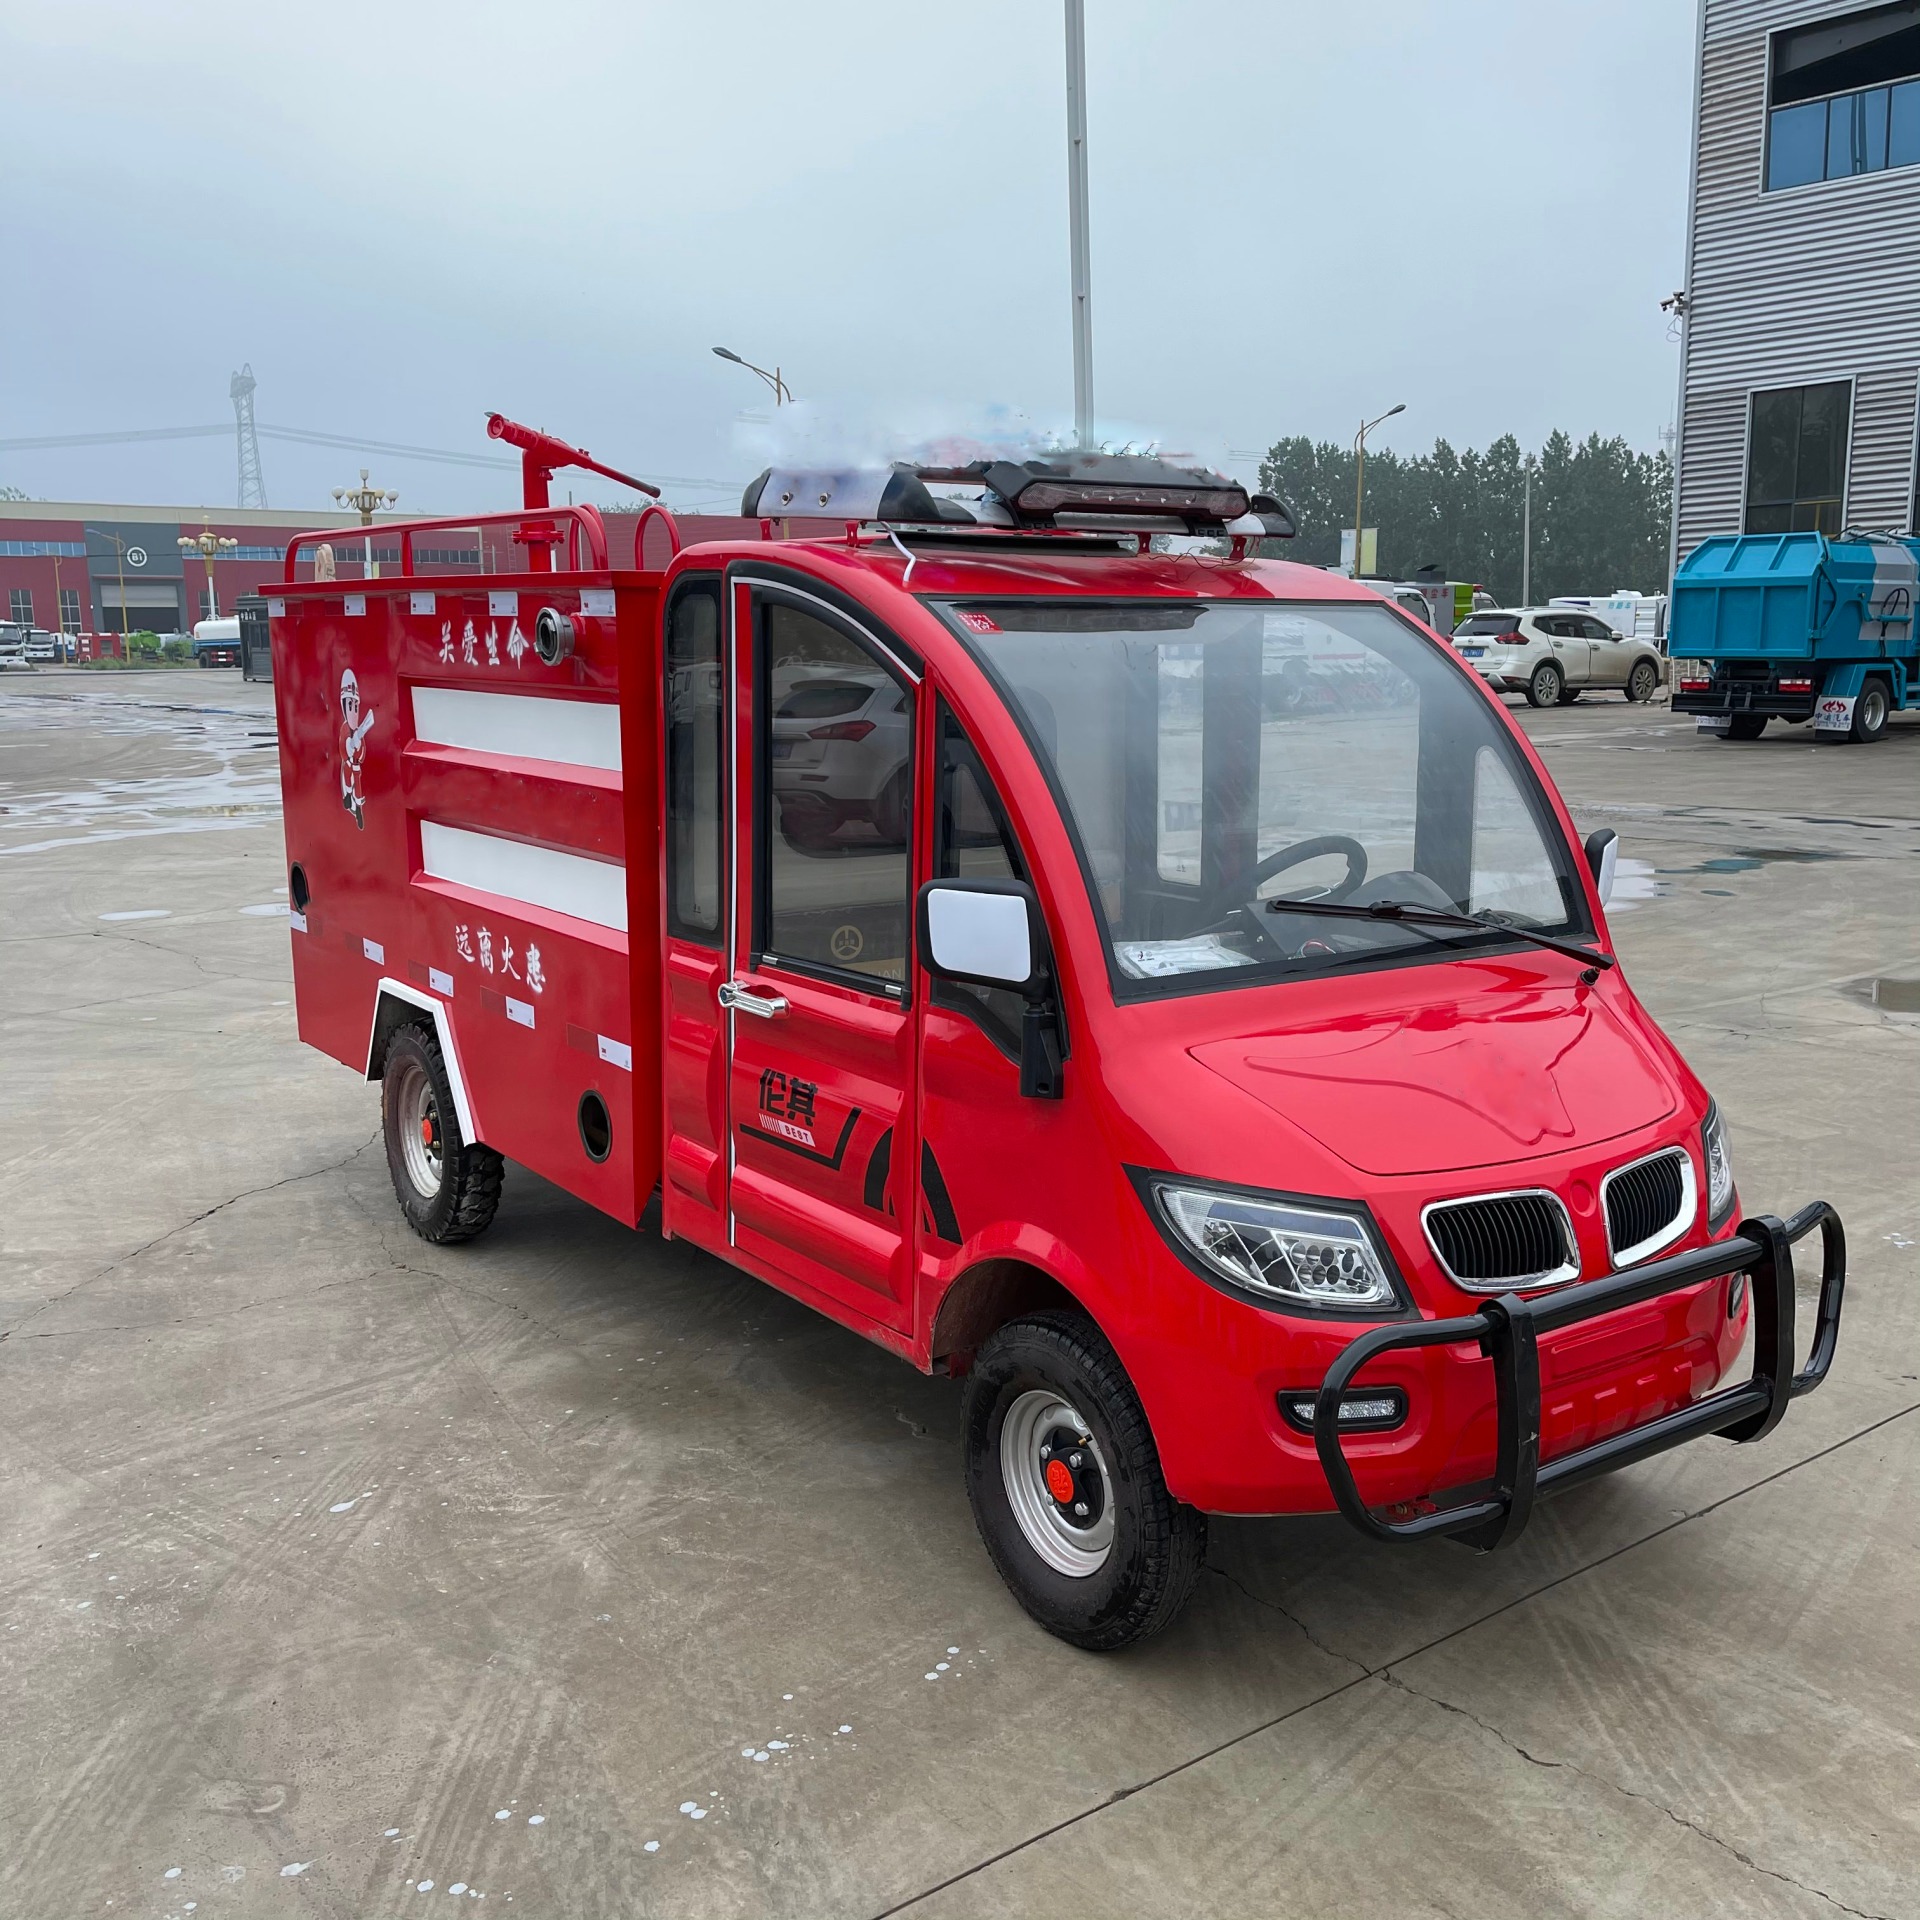 中运威 新能源消防车 配高压水泵1台 直流电机驱动 快捷迅速